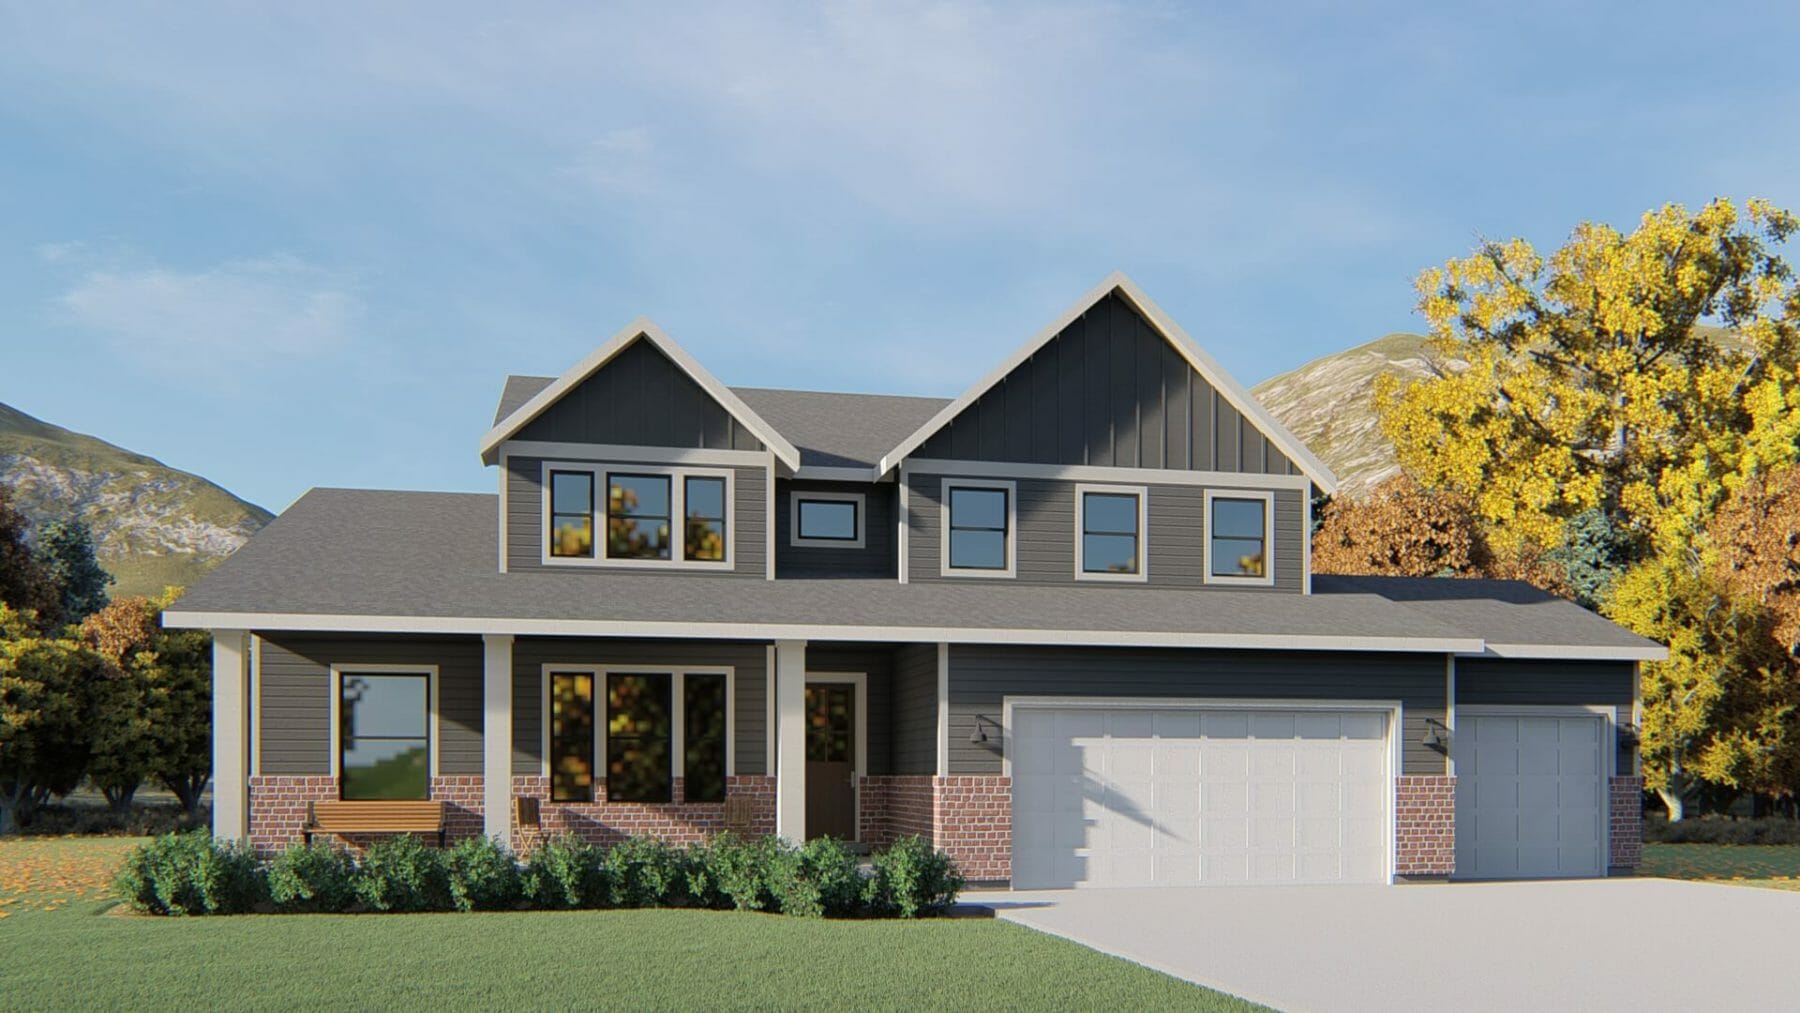 New Home Model - Utah Homes for Sale